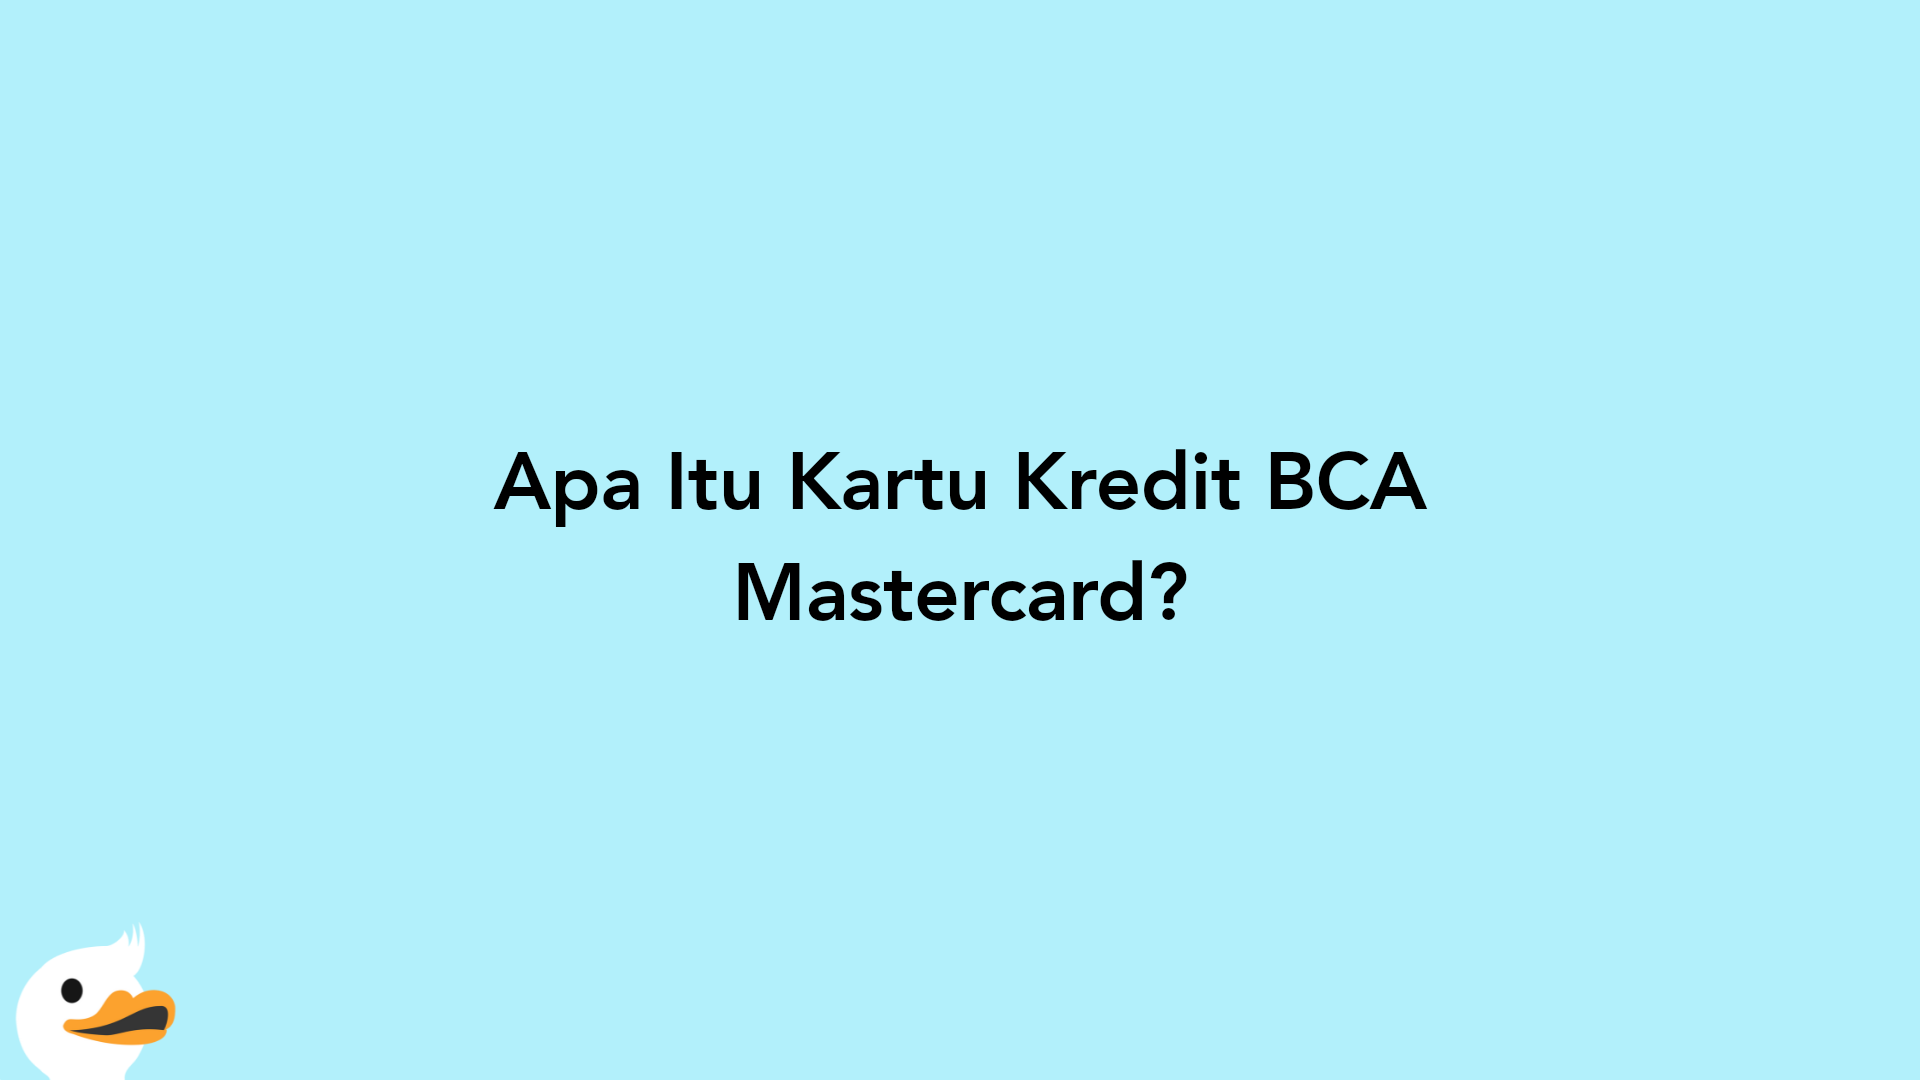 Apa Itu Kartu Kredit BCA Mastercard?